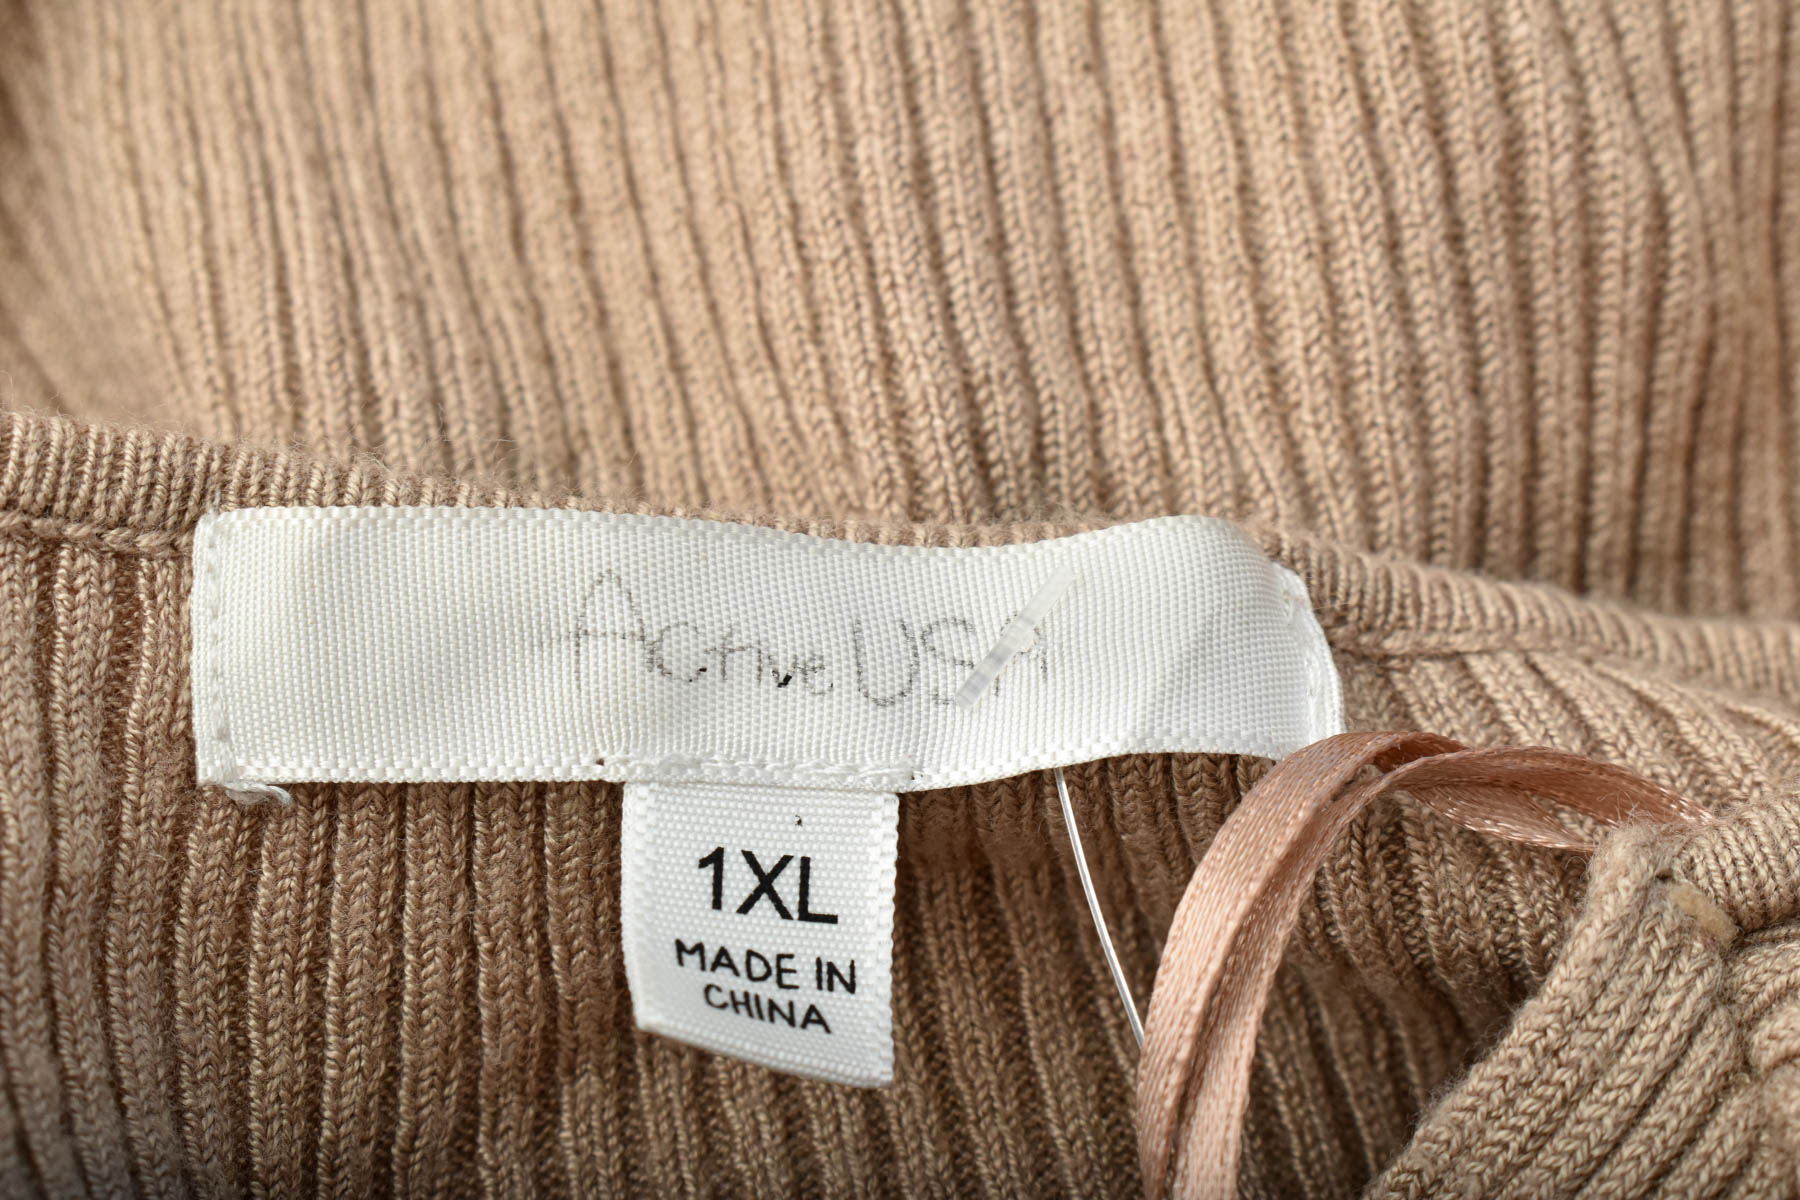 Дамски пуловер - ACTIVE USA - 2